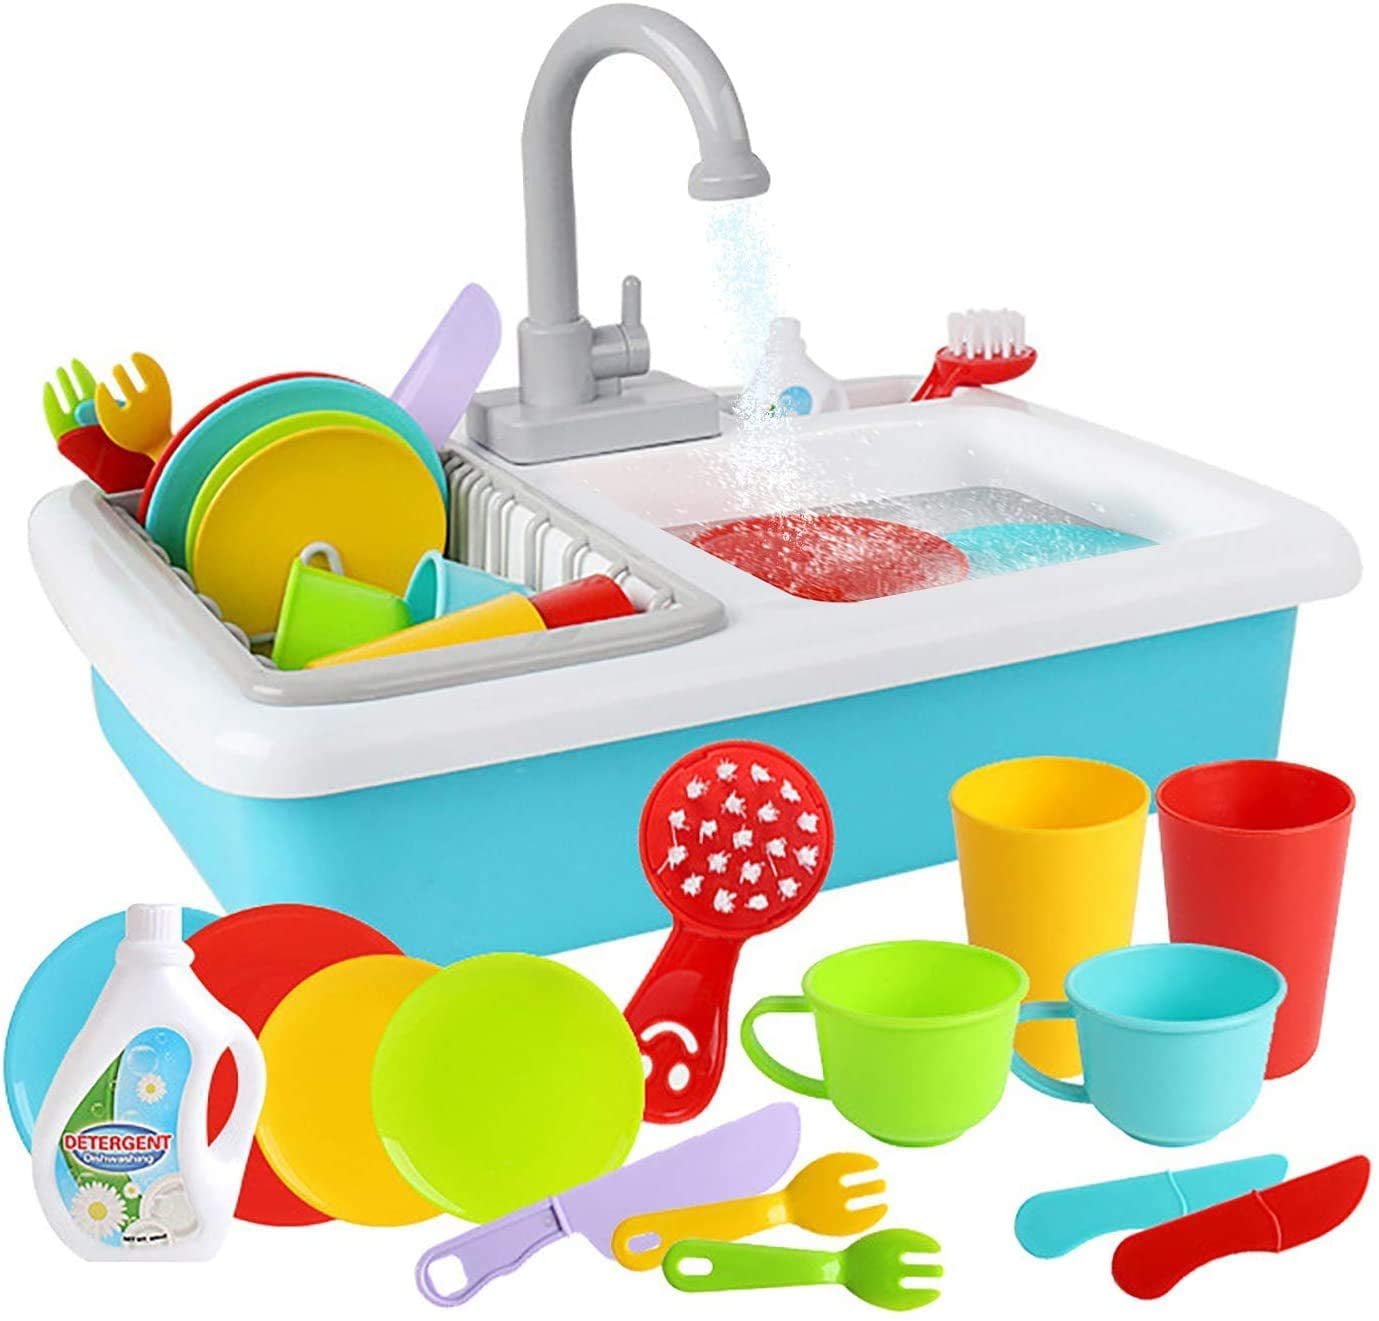 Kids Play Sink Toy Pretend Kitchen House Girl Boy Dishwasher Running Water 